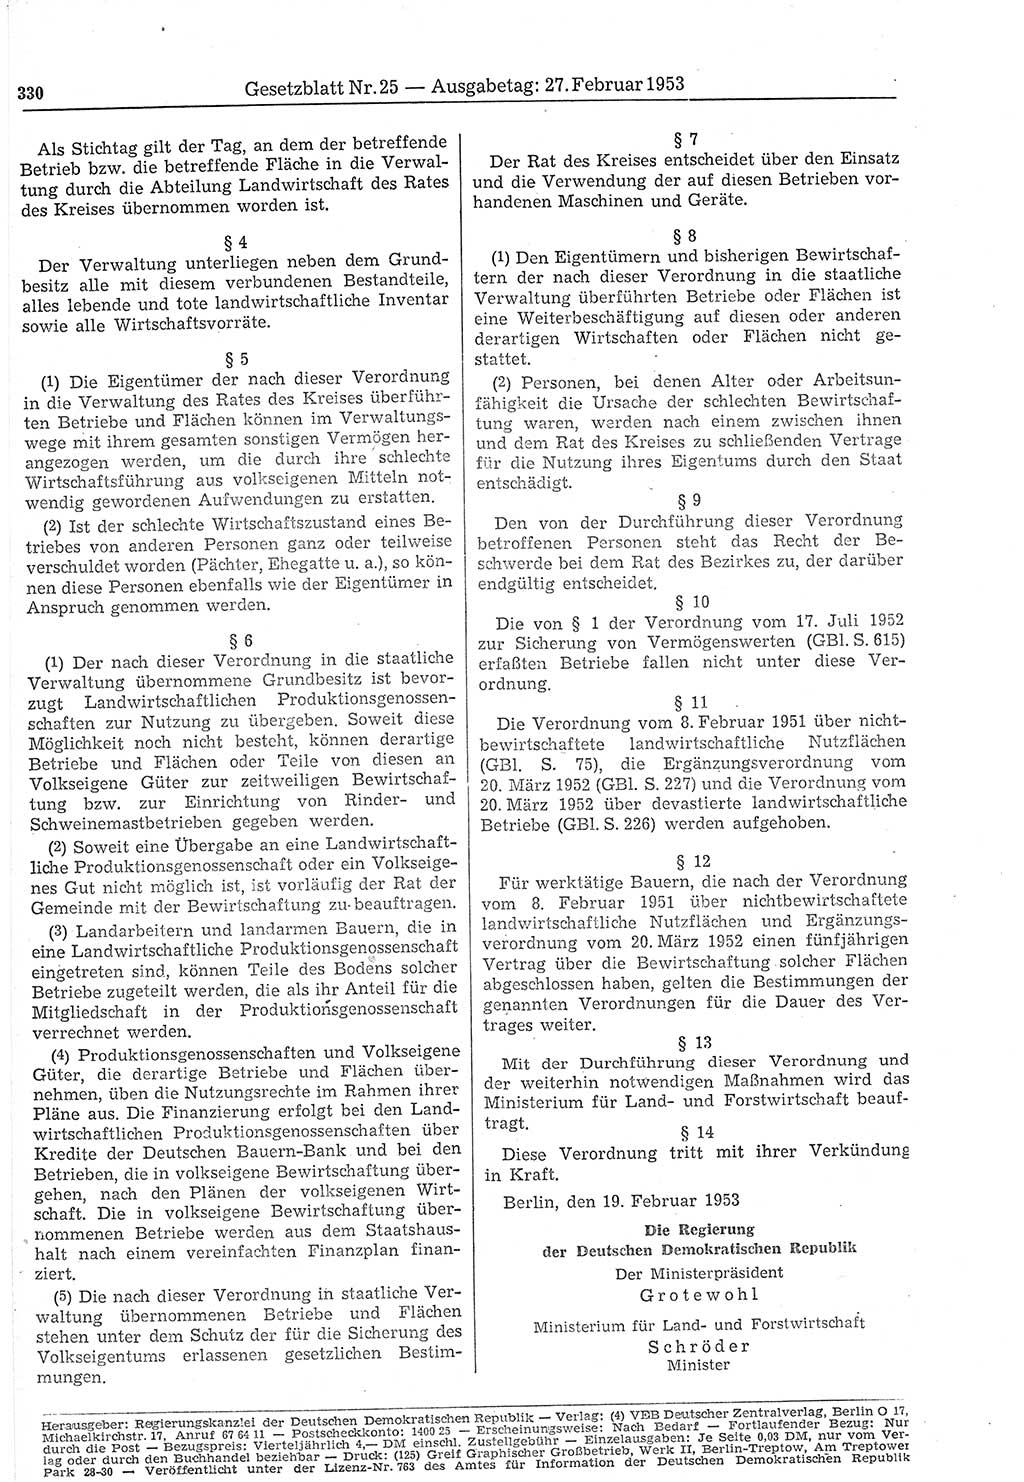 Gesetzblatt (GBl.) der Deutschen Demokratischen Republik (DDR) 1953, Seite 330 (GBl. DDR 1953, S. 330)